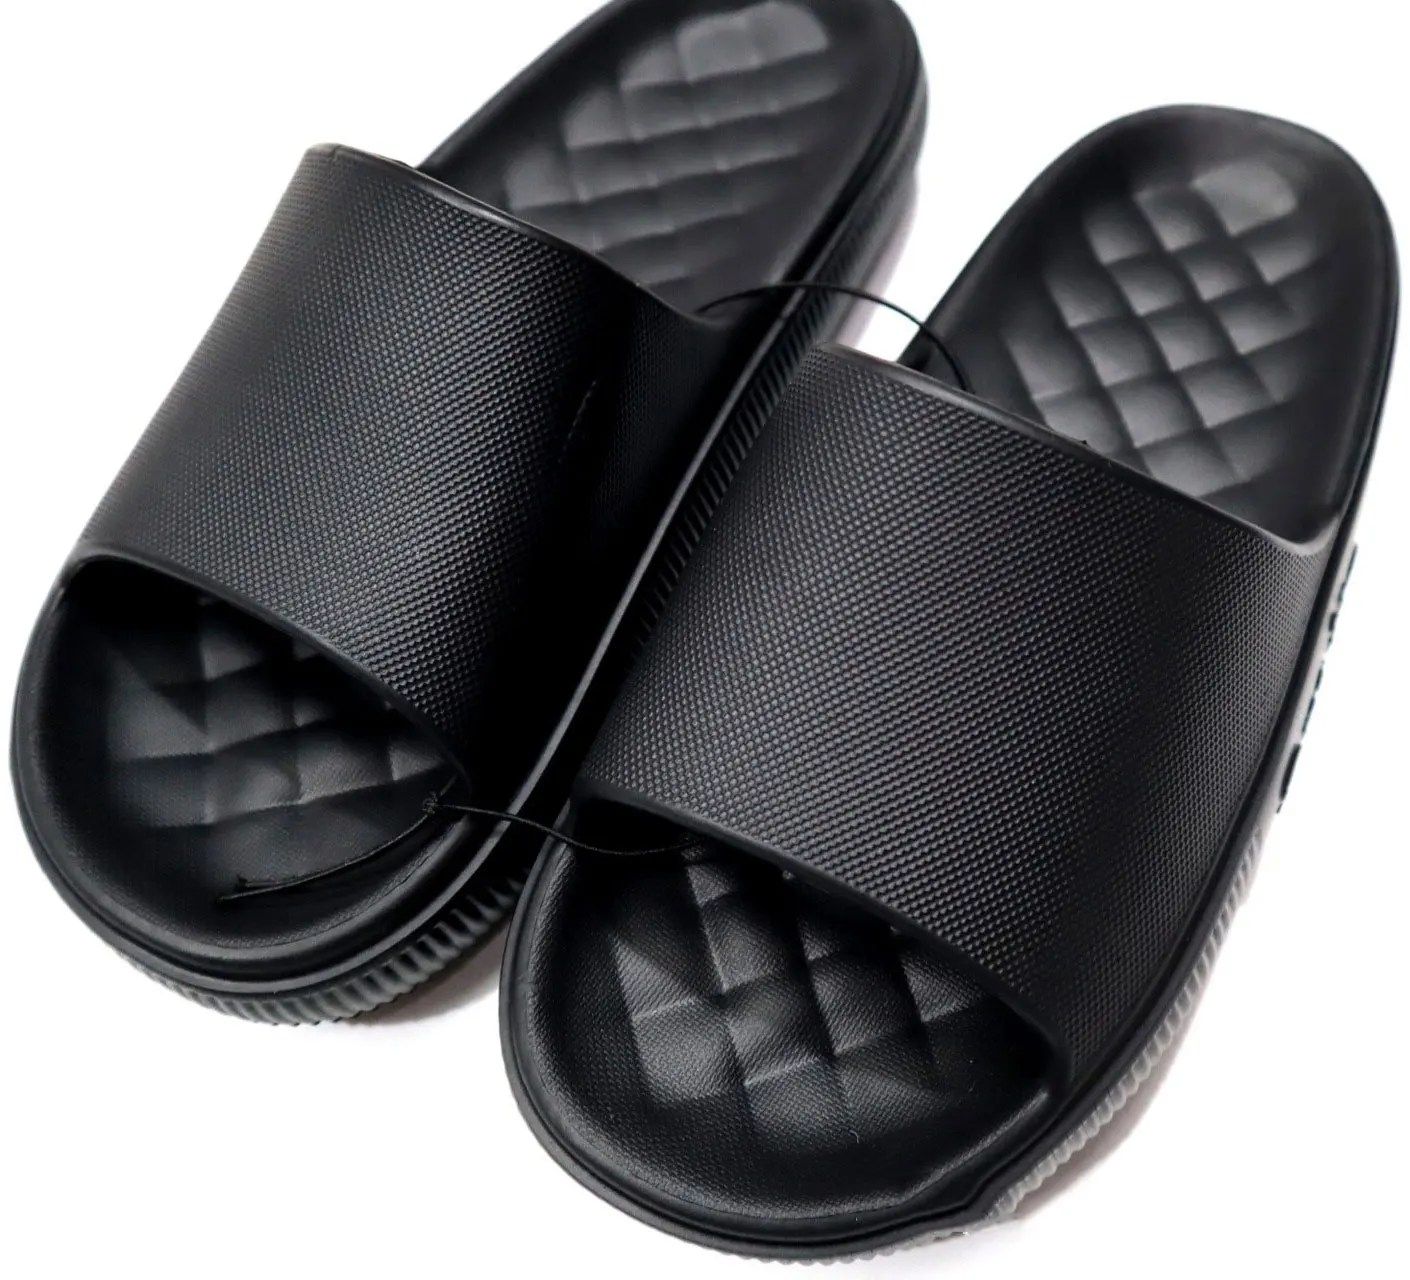 Images for Men's Black Slippers - Black